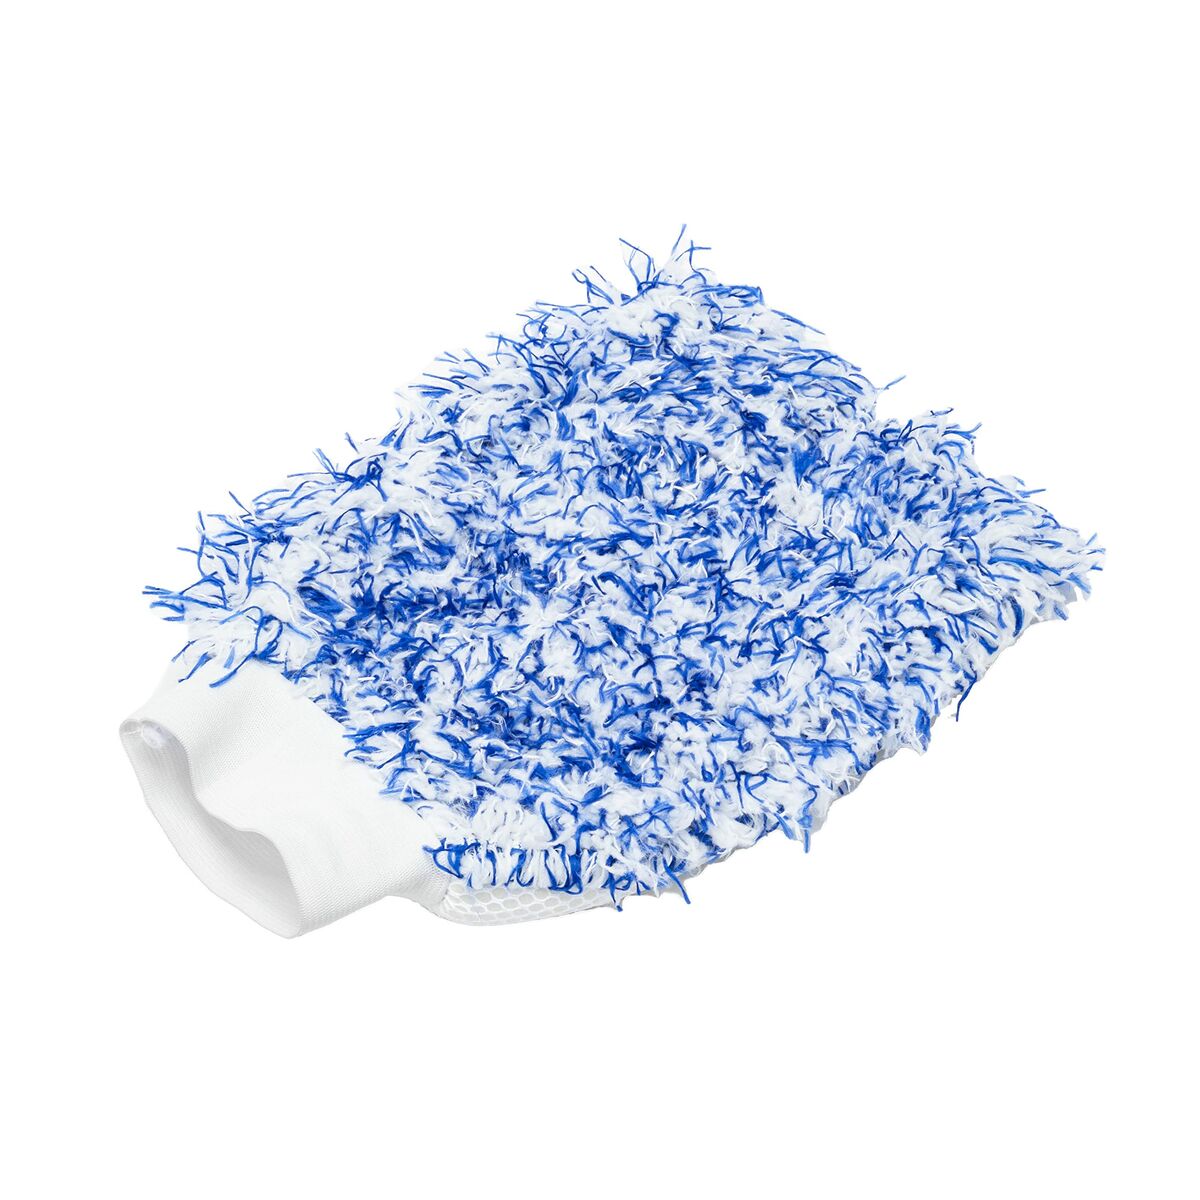 MICHOFIBRE ČIstilno krpo Motul MTL111022 Modra / bela bombažna rokavica, ki jih je mogoče umivati